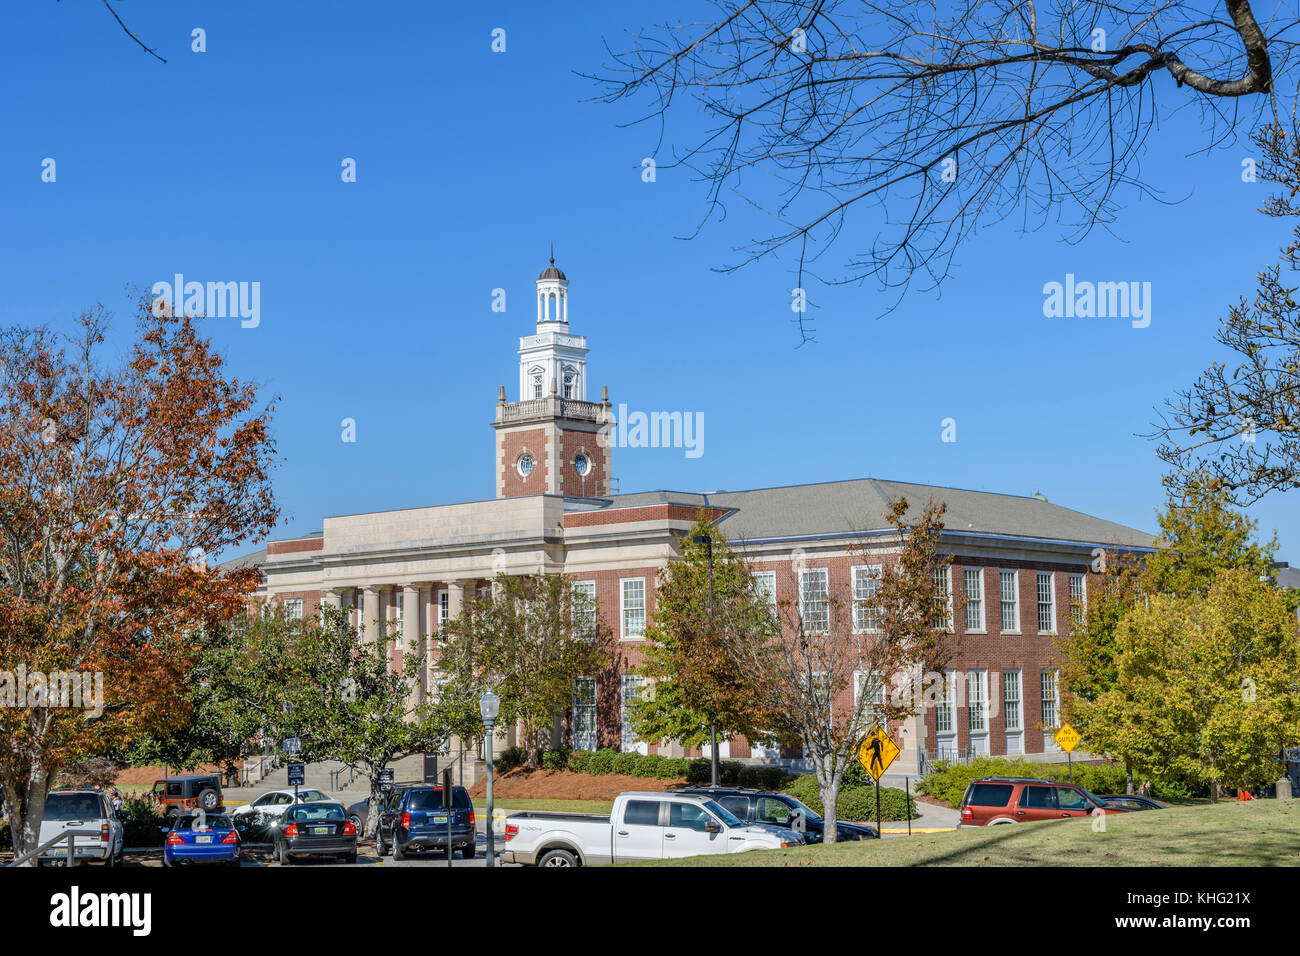 Ross laboratorio chimico edificio del campus di Auburn University, un american university / college di Auburn Alabama, Stati Uniti d'America. Foto Stock